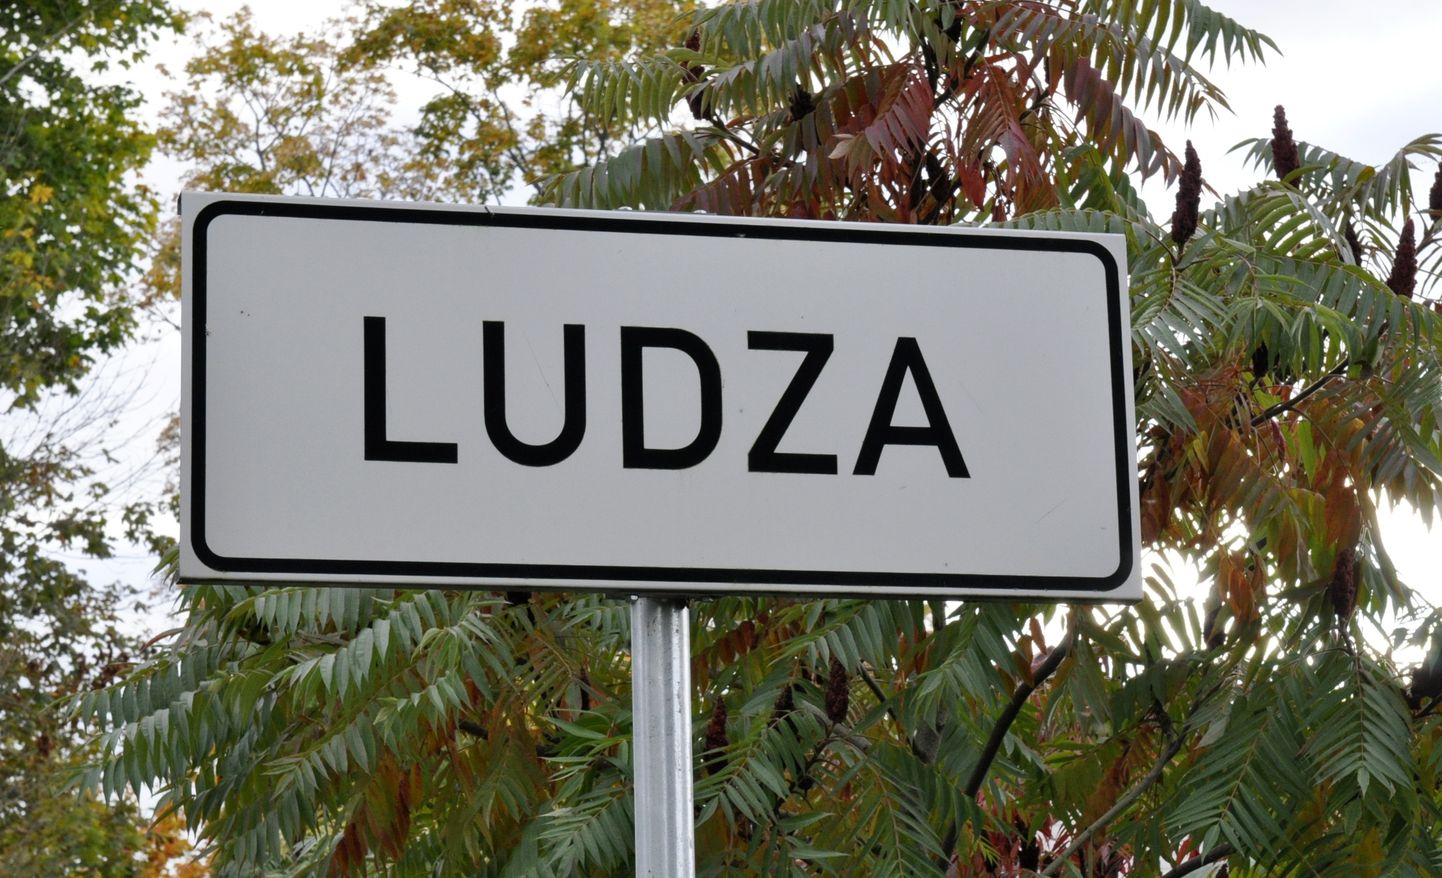 Vietas norādes ceļa zīme - Ludza.